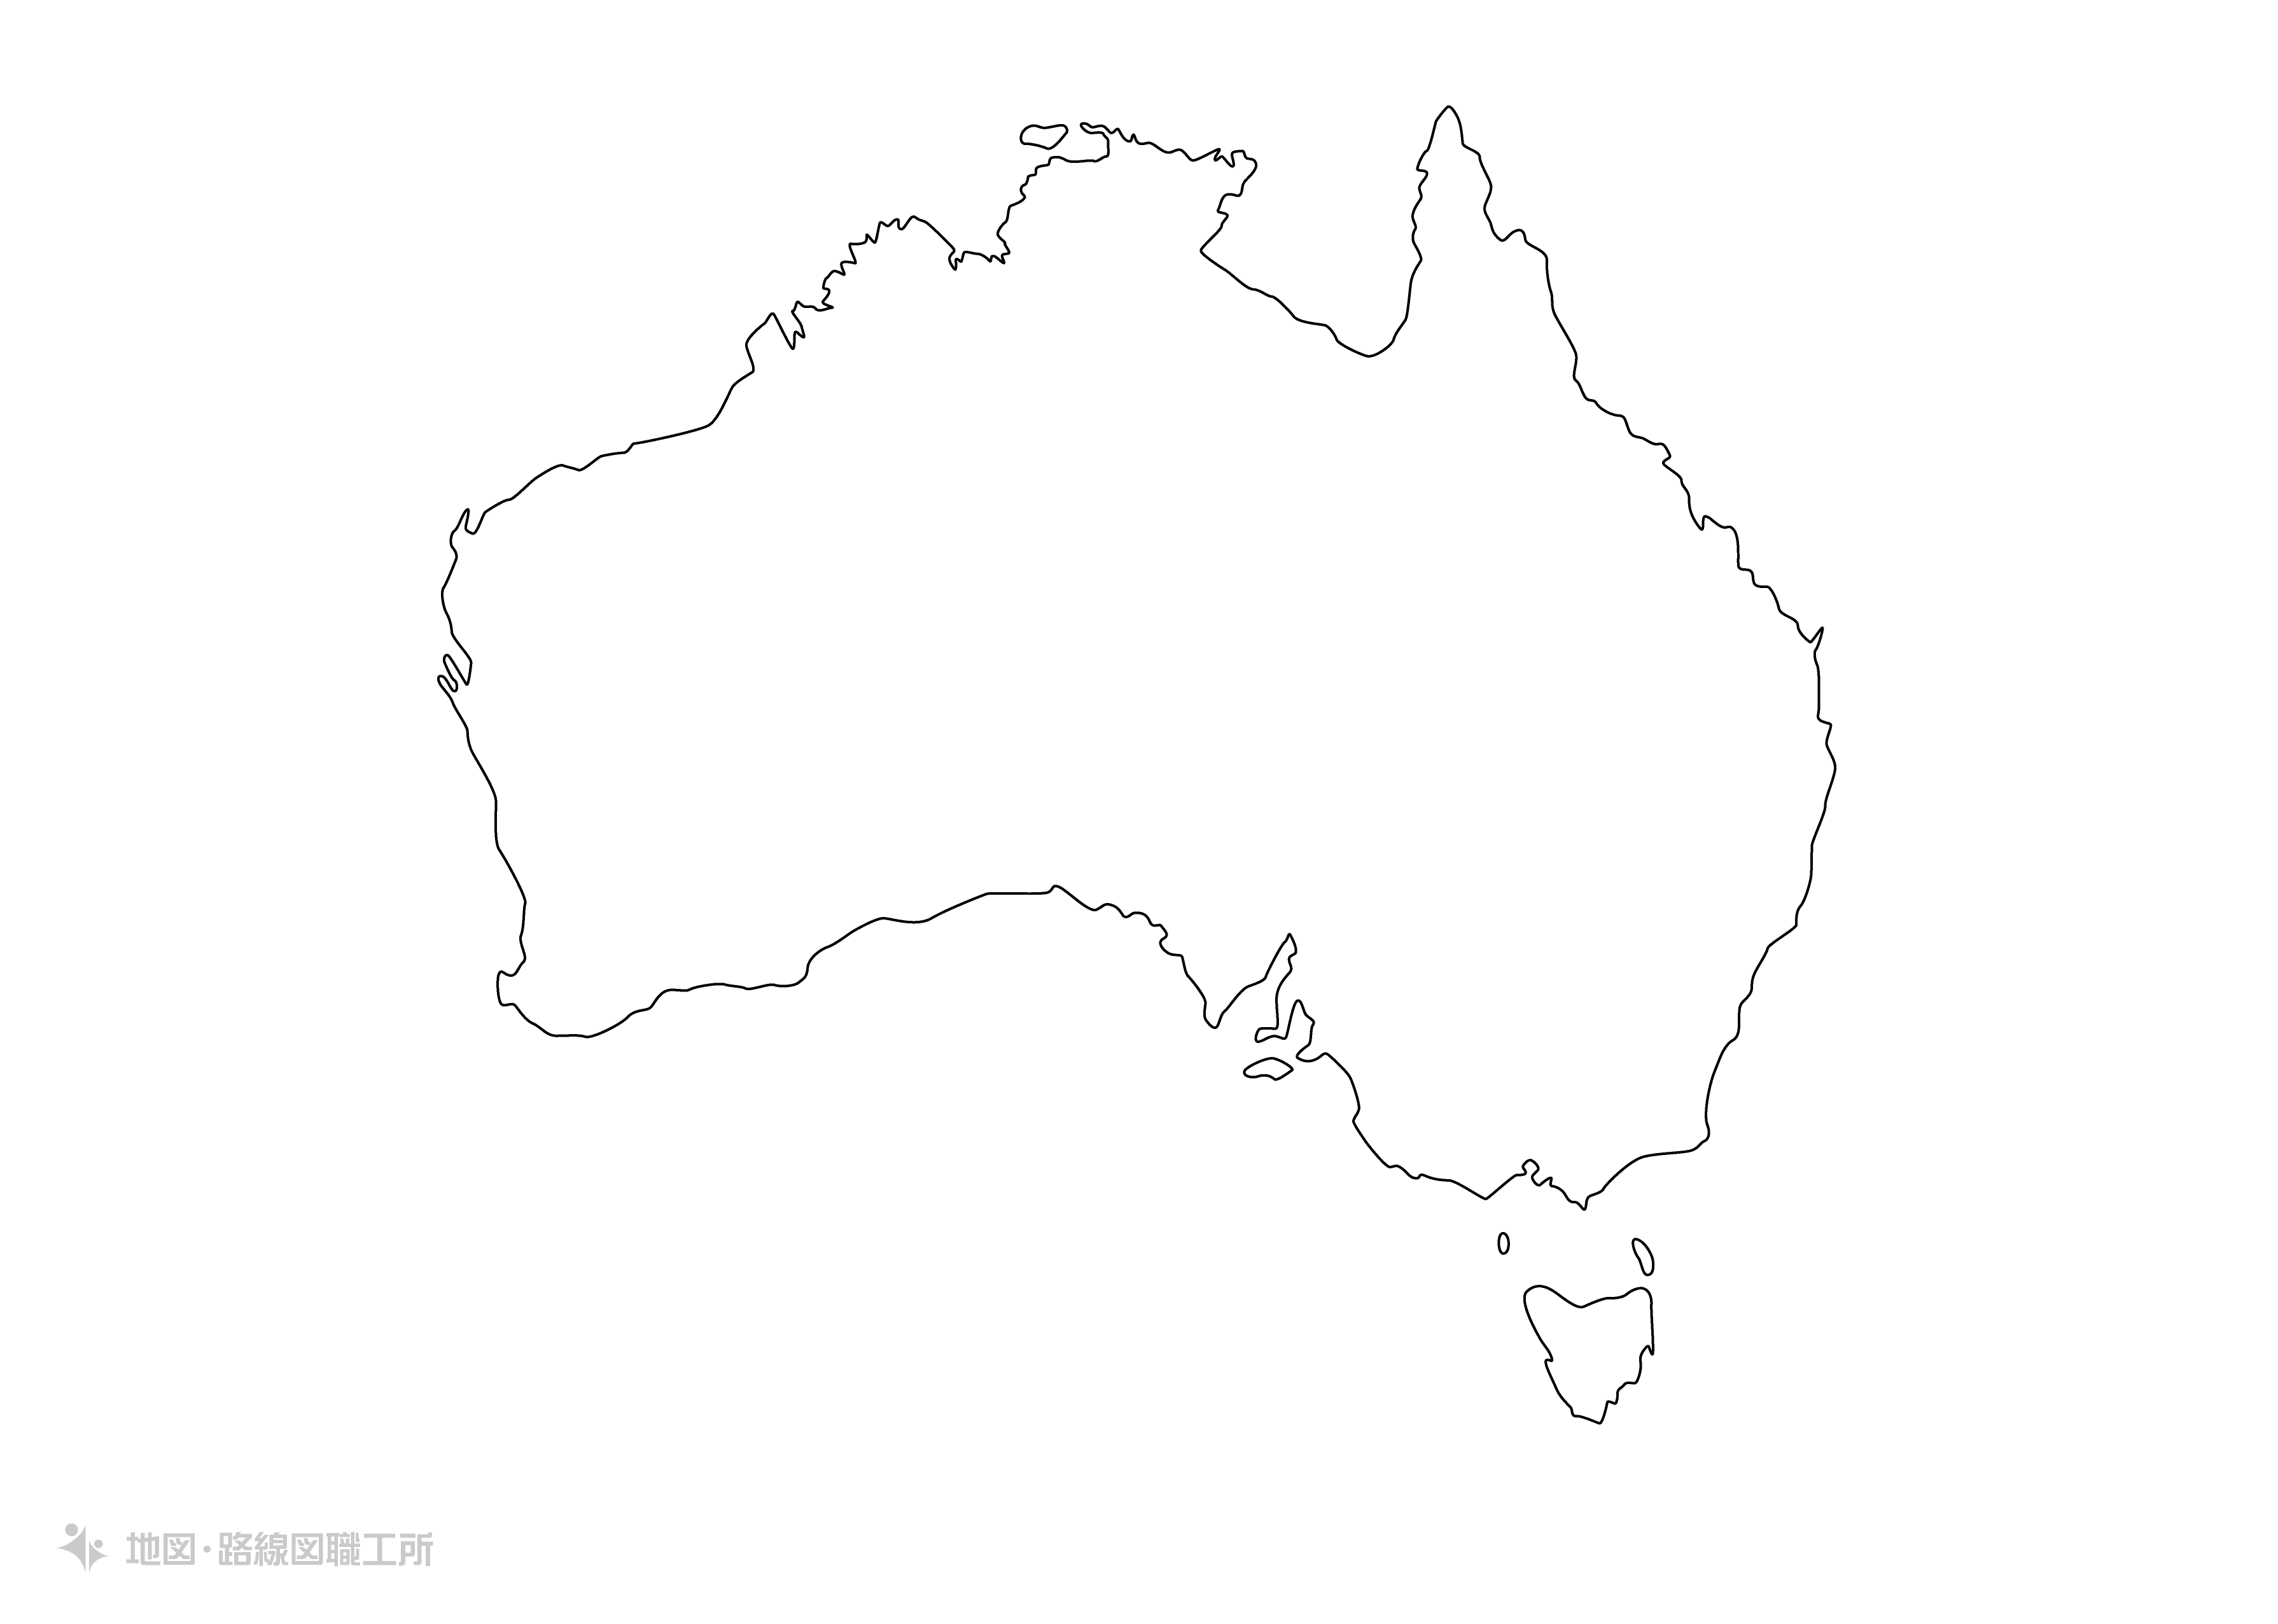 世界の白地図 オーストラリア連邦 commonwealth-of-australiamap